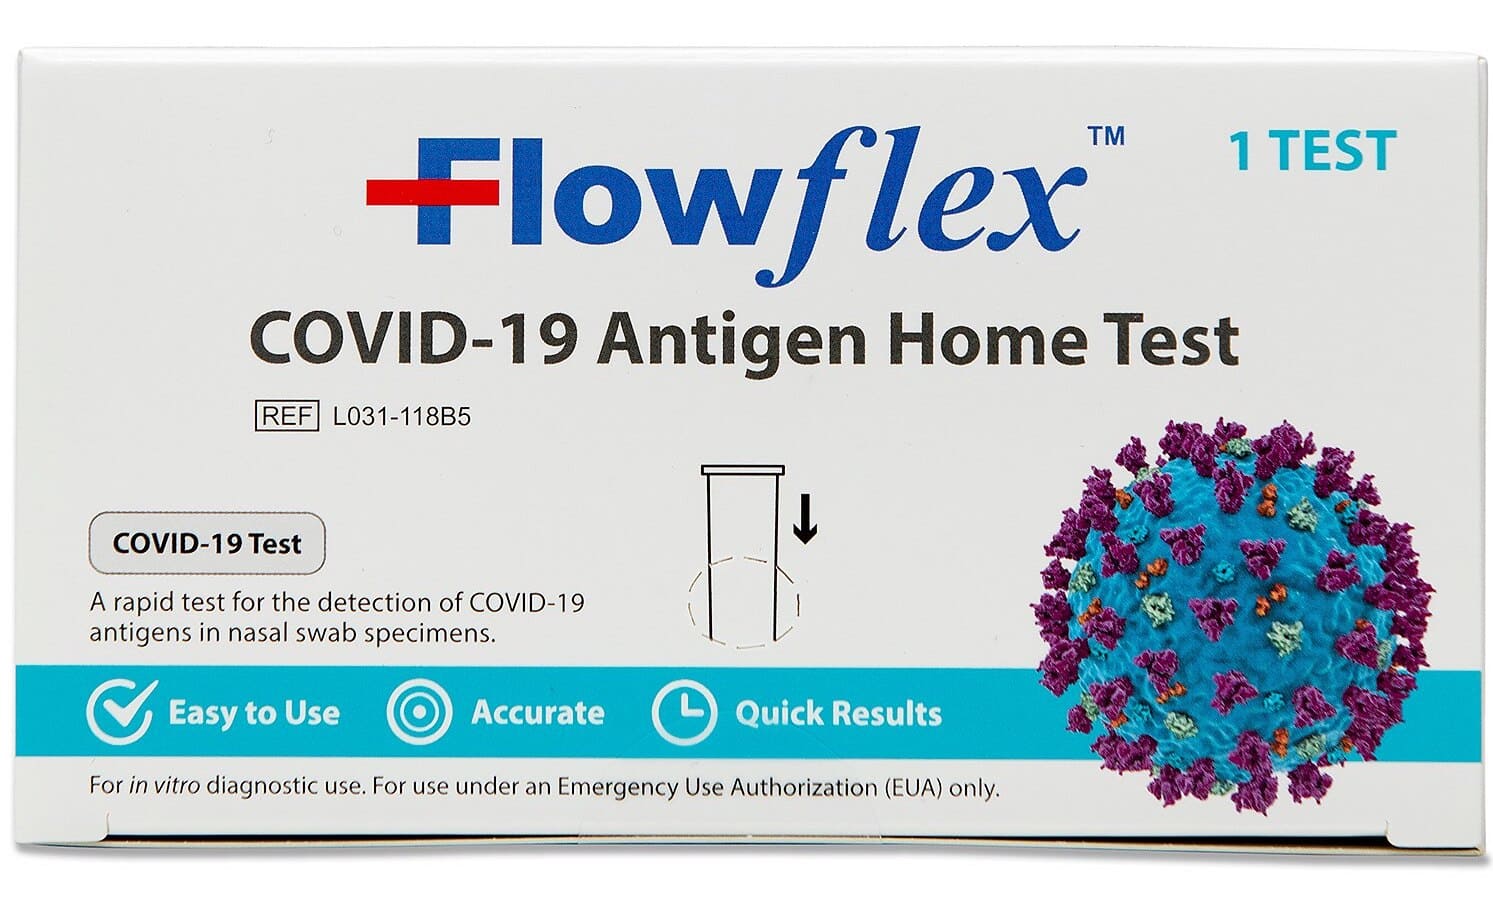 Flowflex Prueba Casera de Antígeno del COVID-19